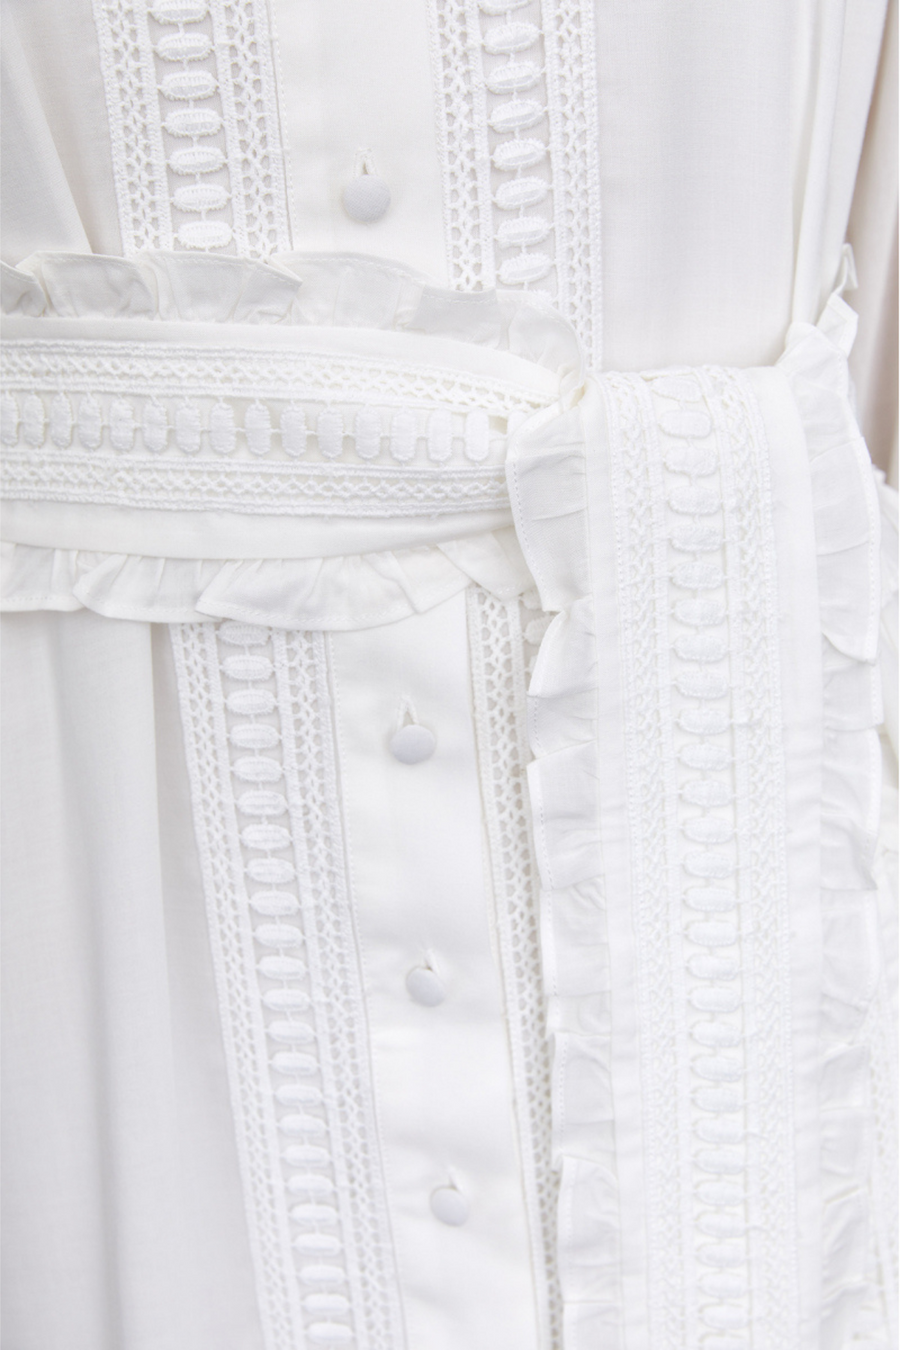 Jasmine Maxi Dress (White I)